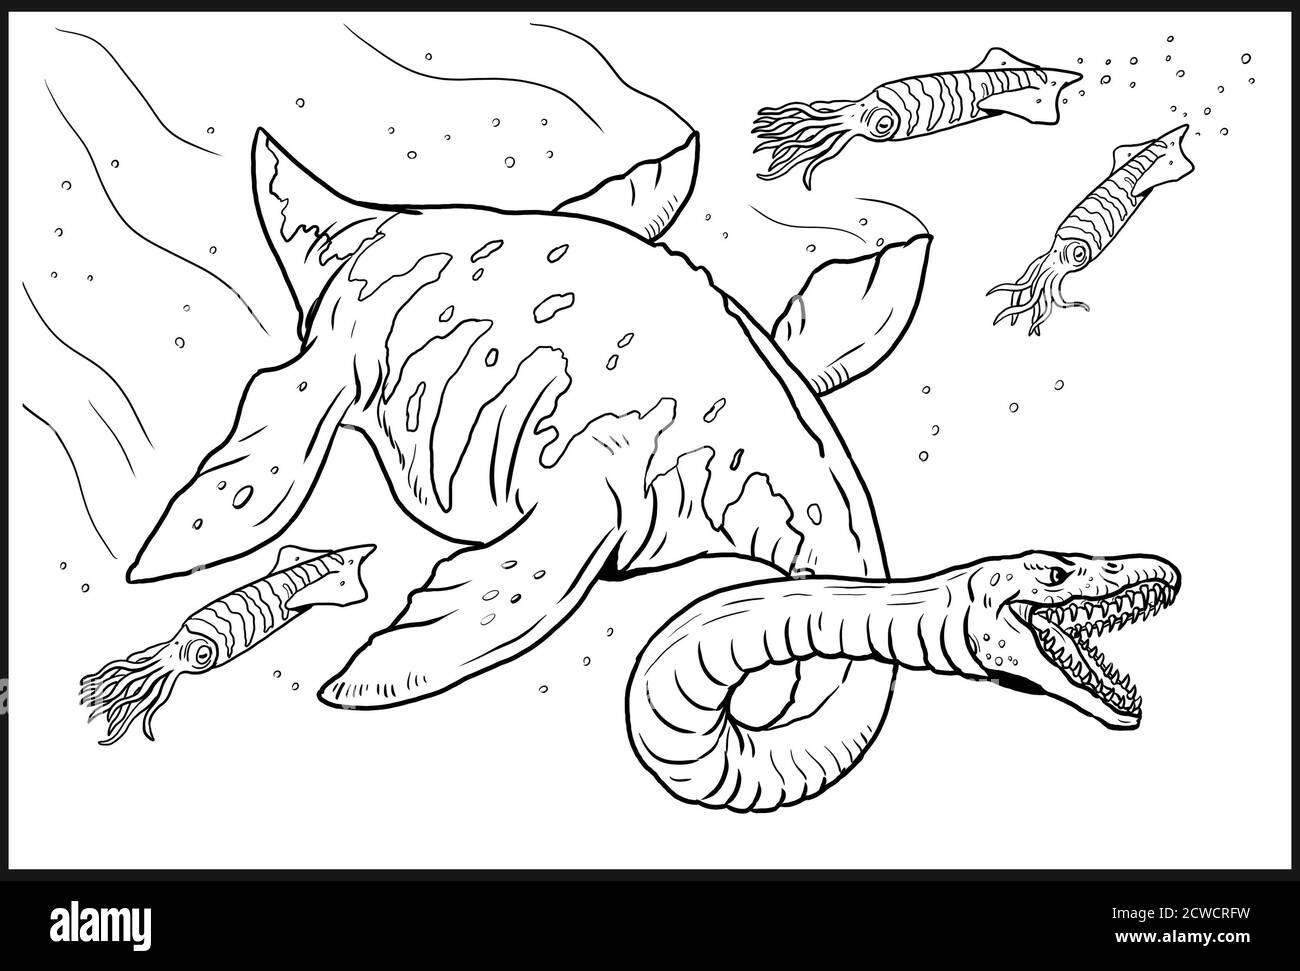 Reptile aquatique préhistorique - Plesiosaurus. Dinosaure aquatique. Page de coloriage. Banque D'Images